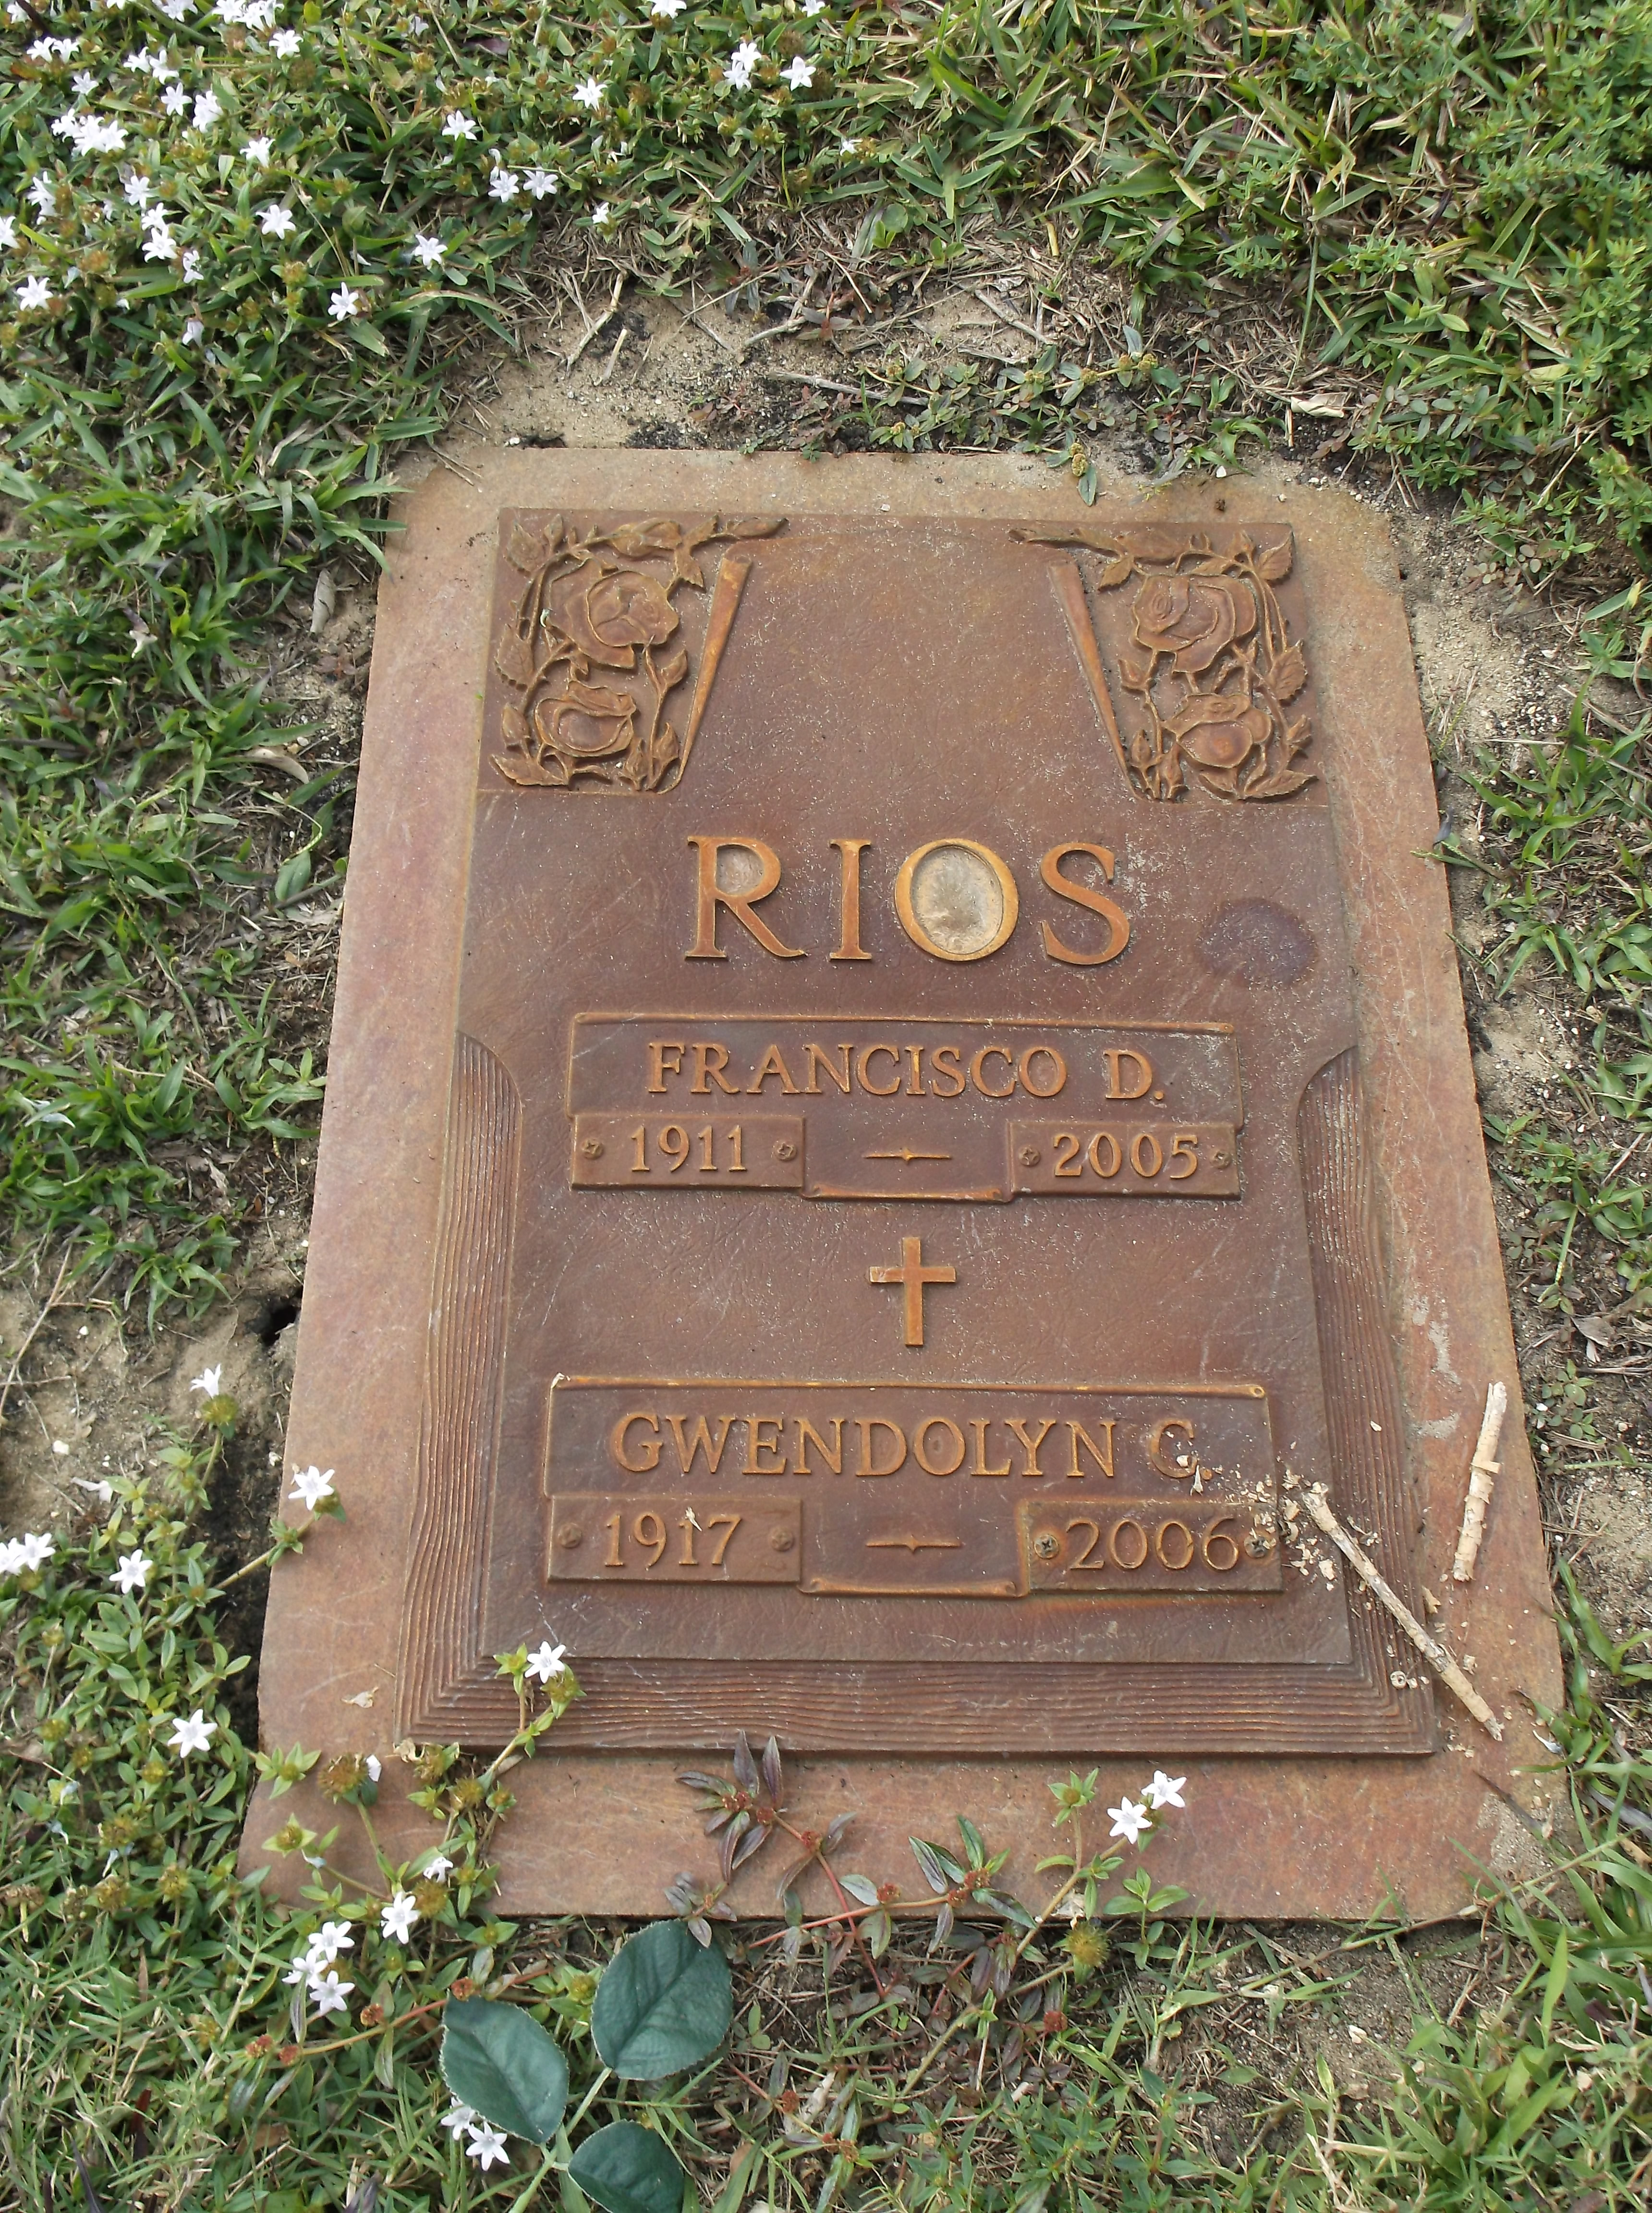 Francisco D Rios